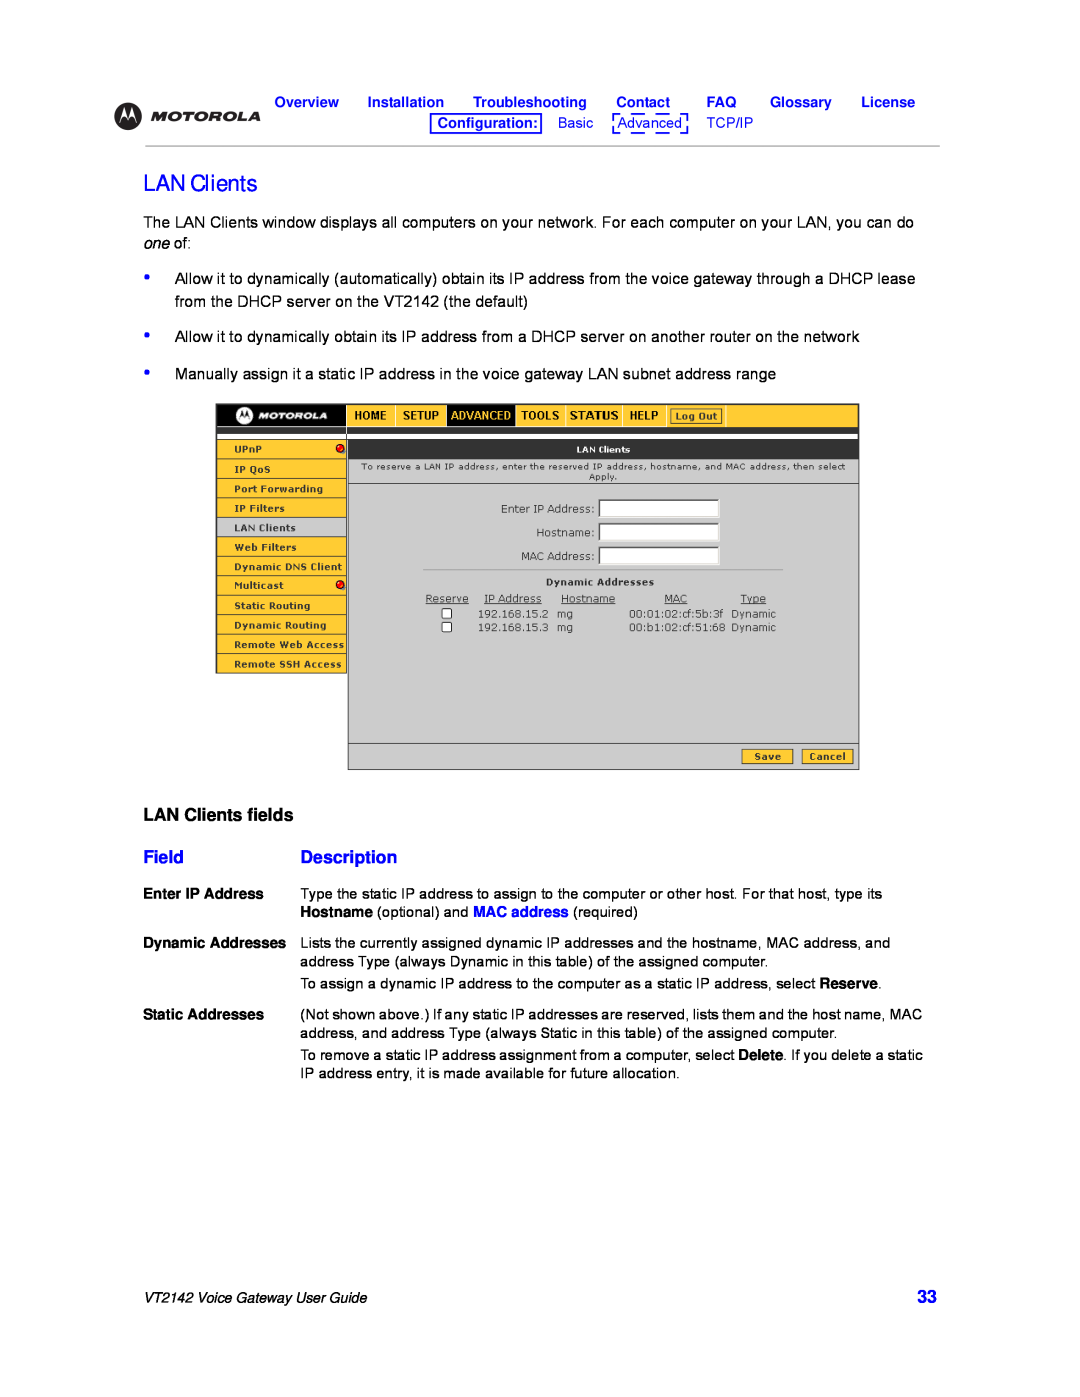 Motorola VT2142 manual LAN Clients fields, FieldDescription 